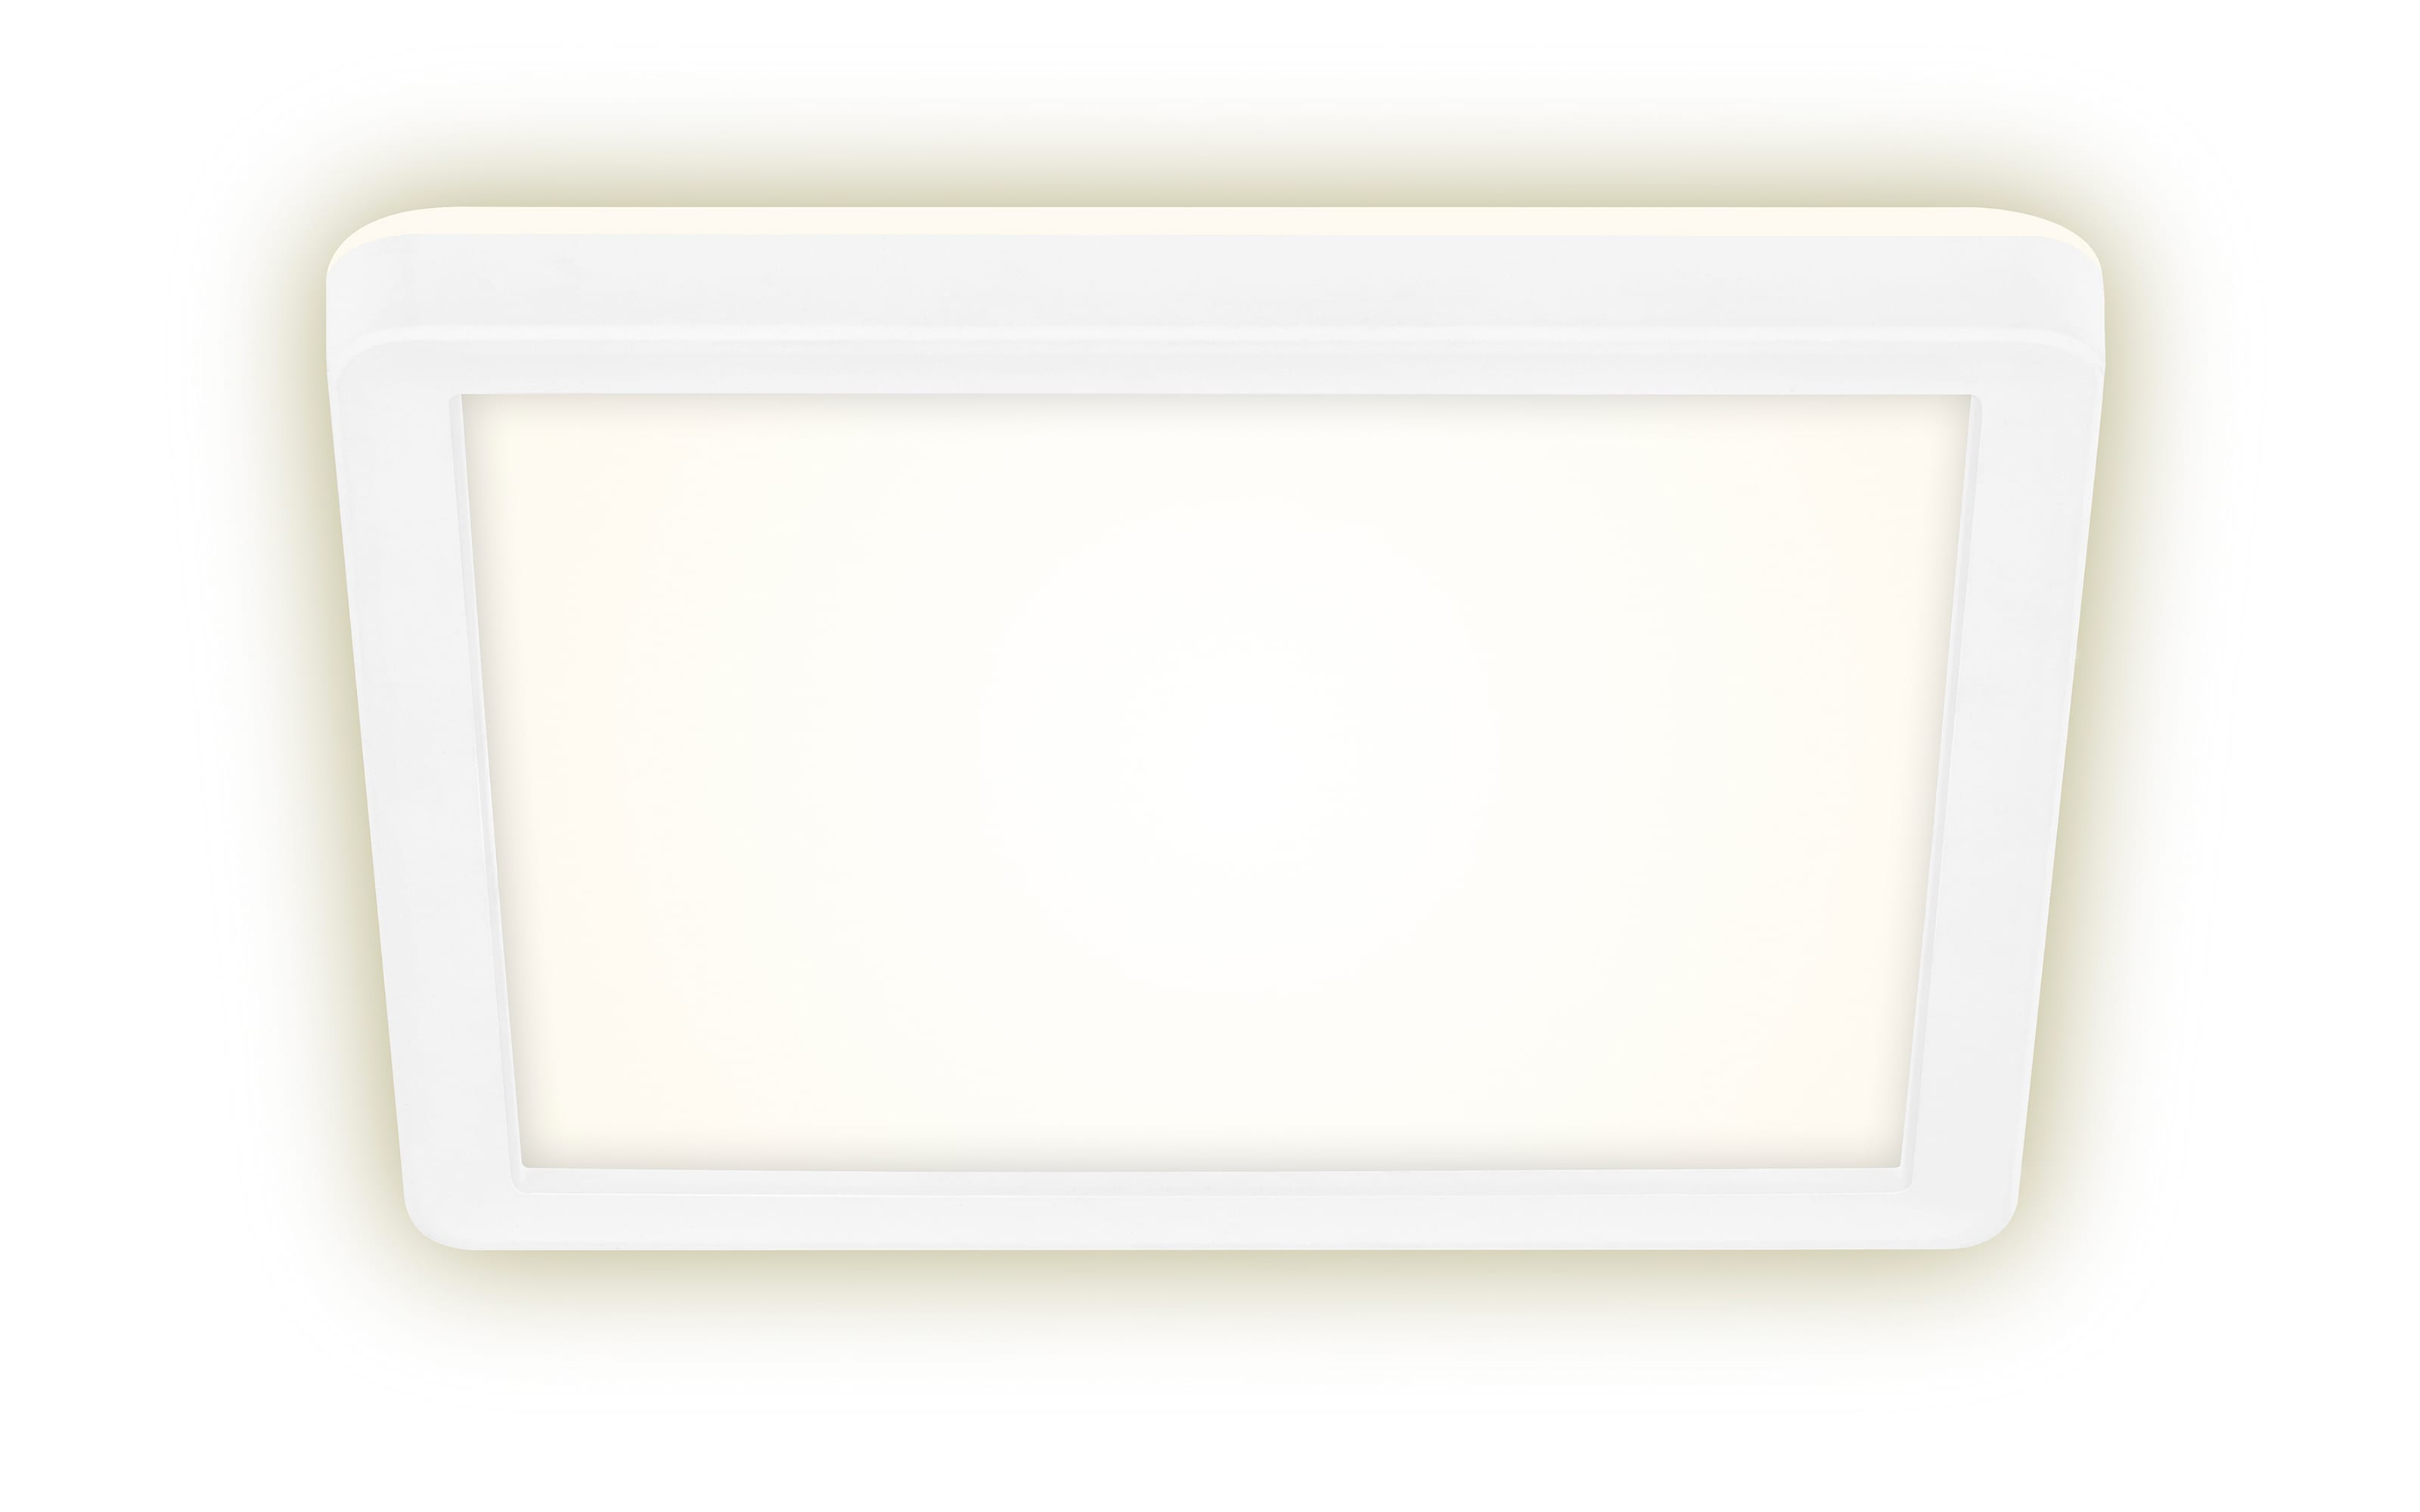 LED-Deckenleuchte Slim in weiß, 19 x 19 cm